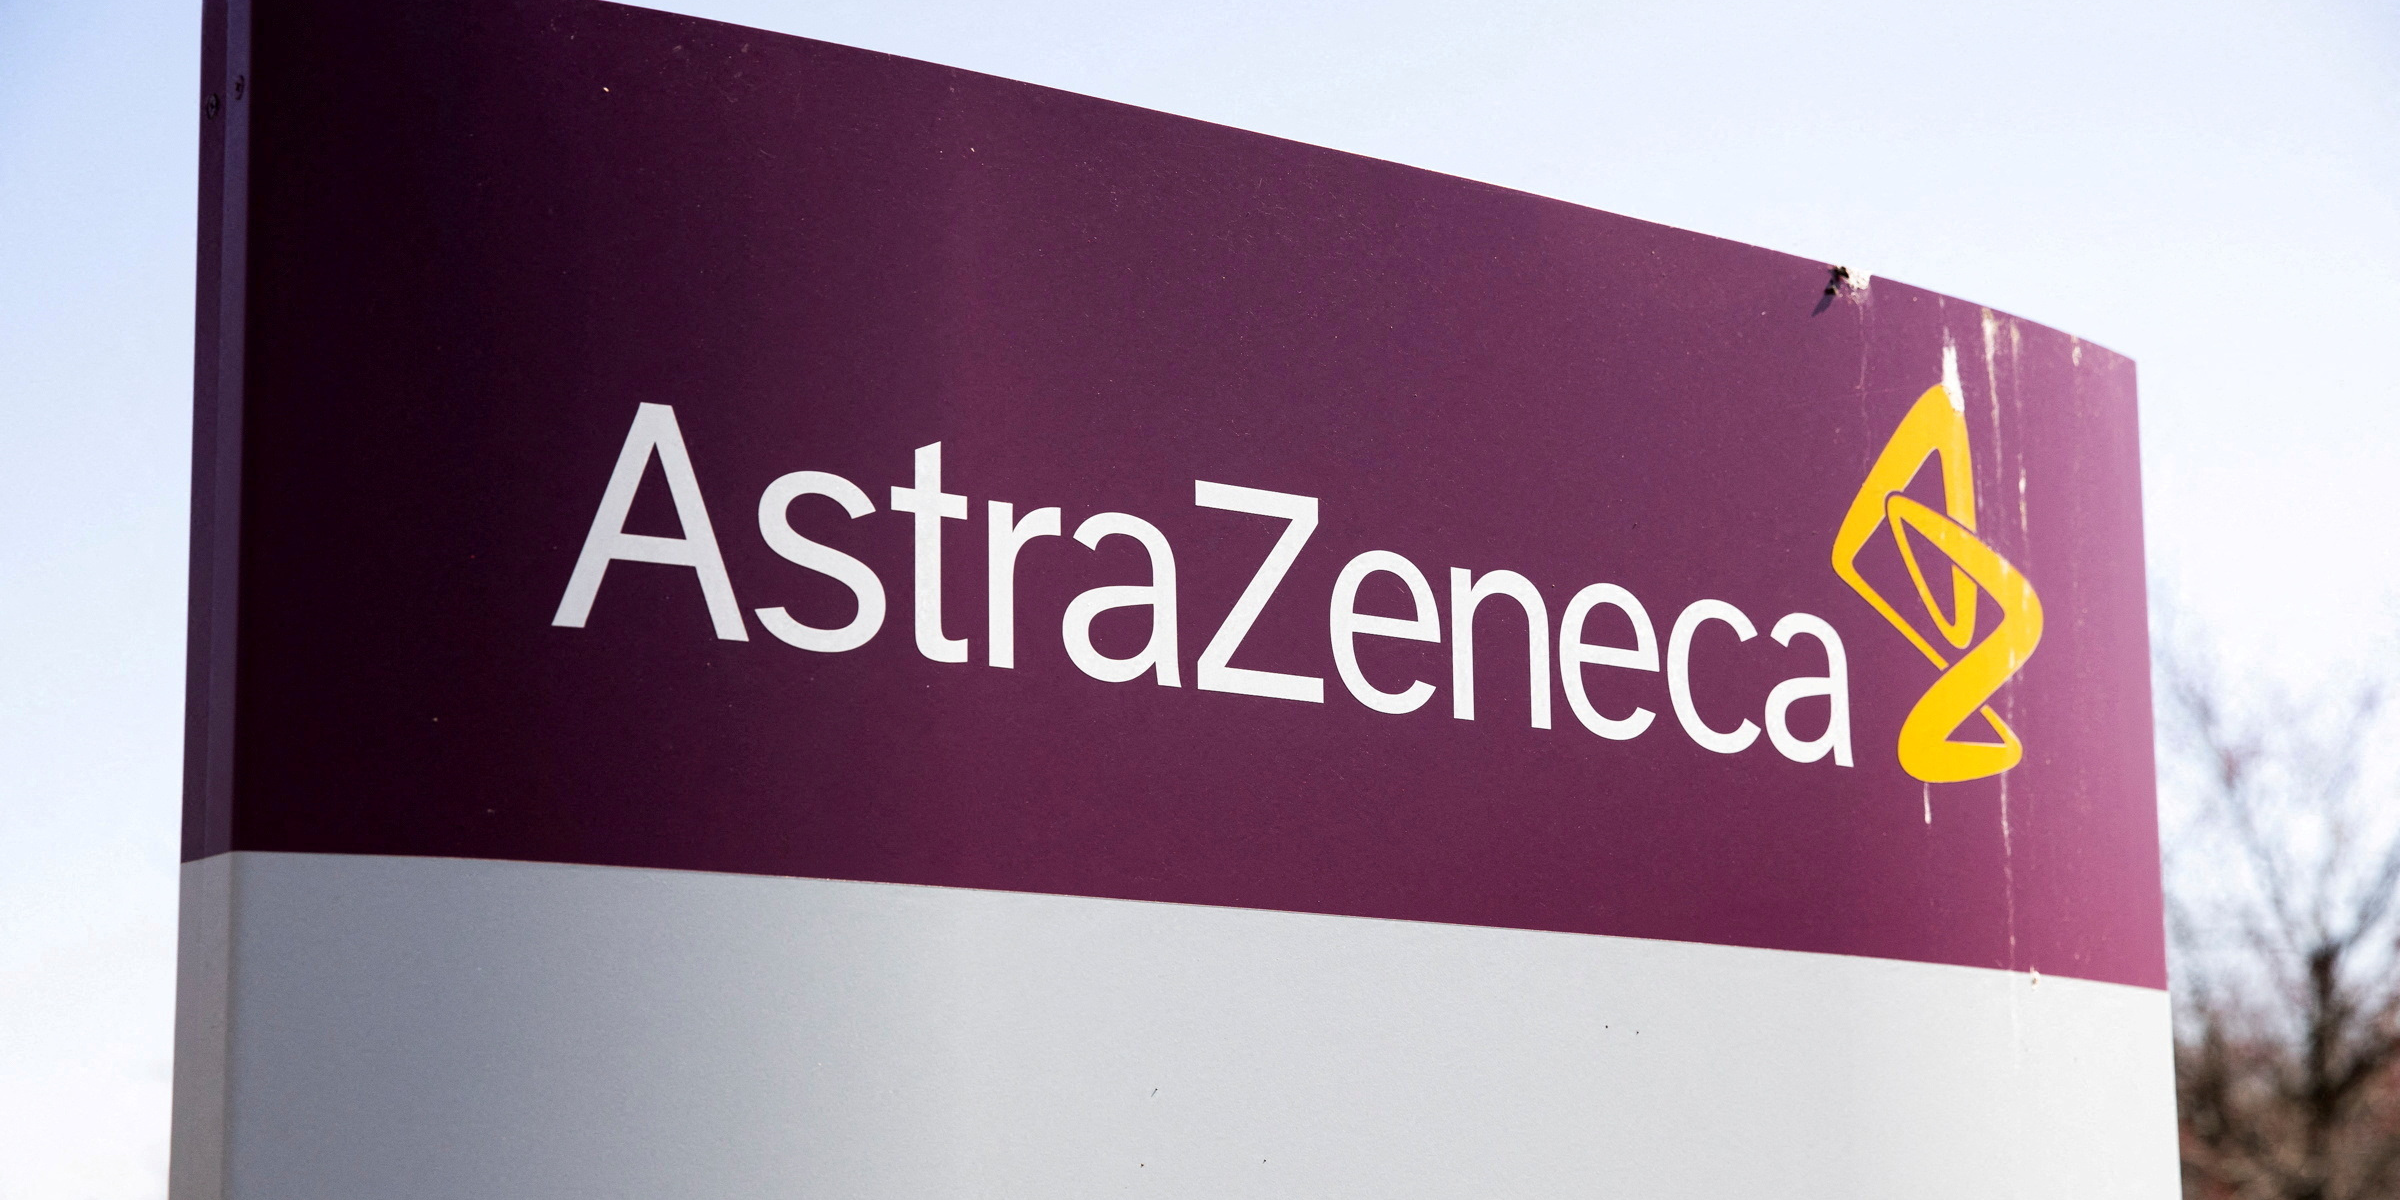 Le laboratoire Astrazeneca s'attend une envolée de son chiffre d'affaires d'ici 2030